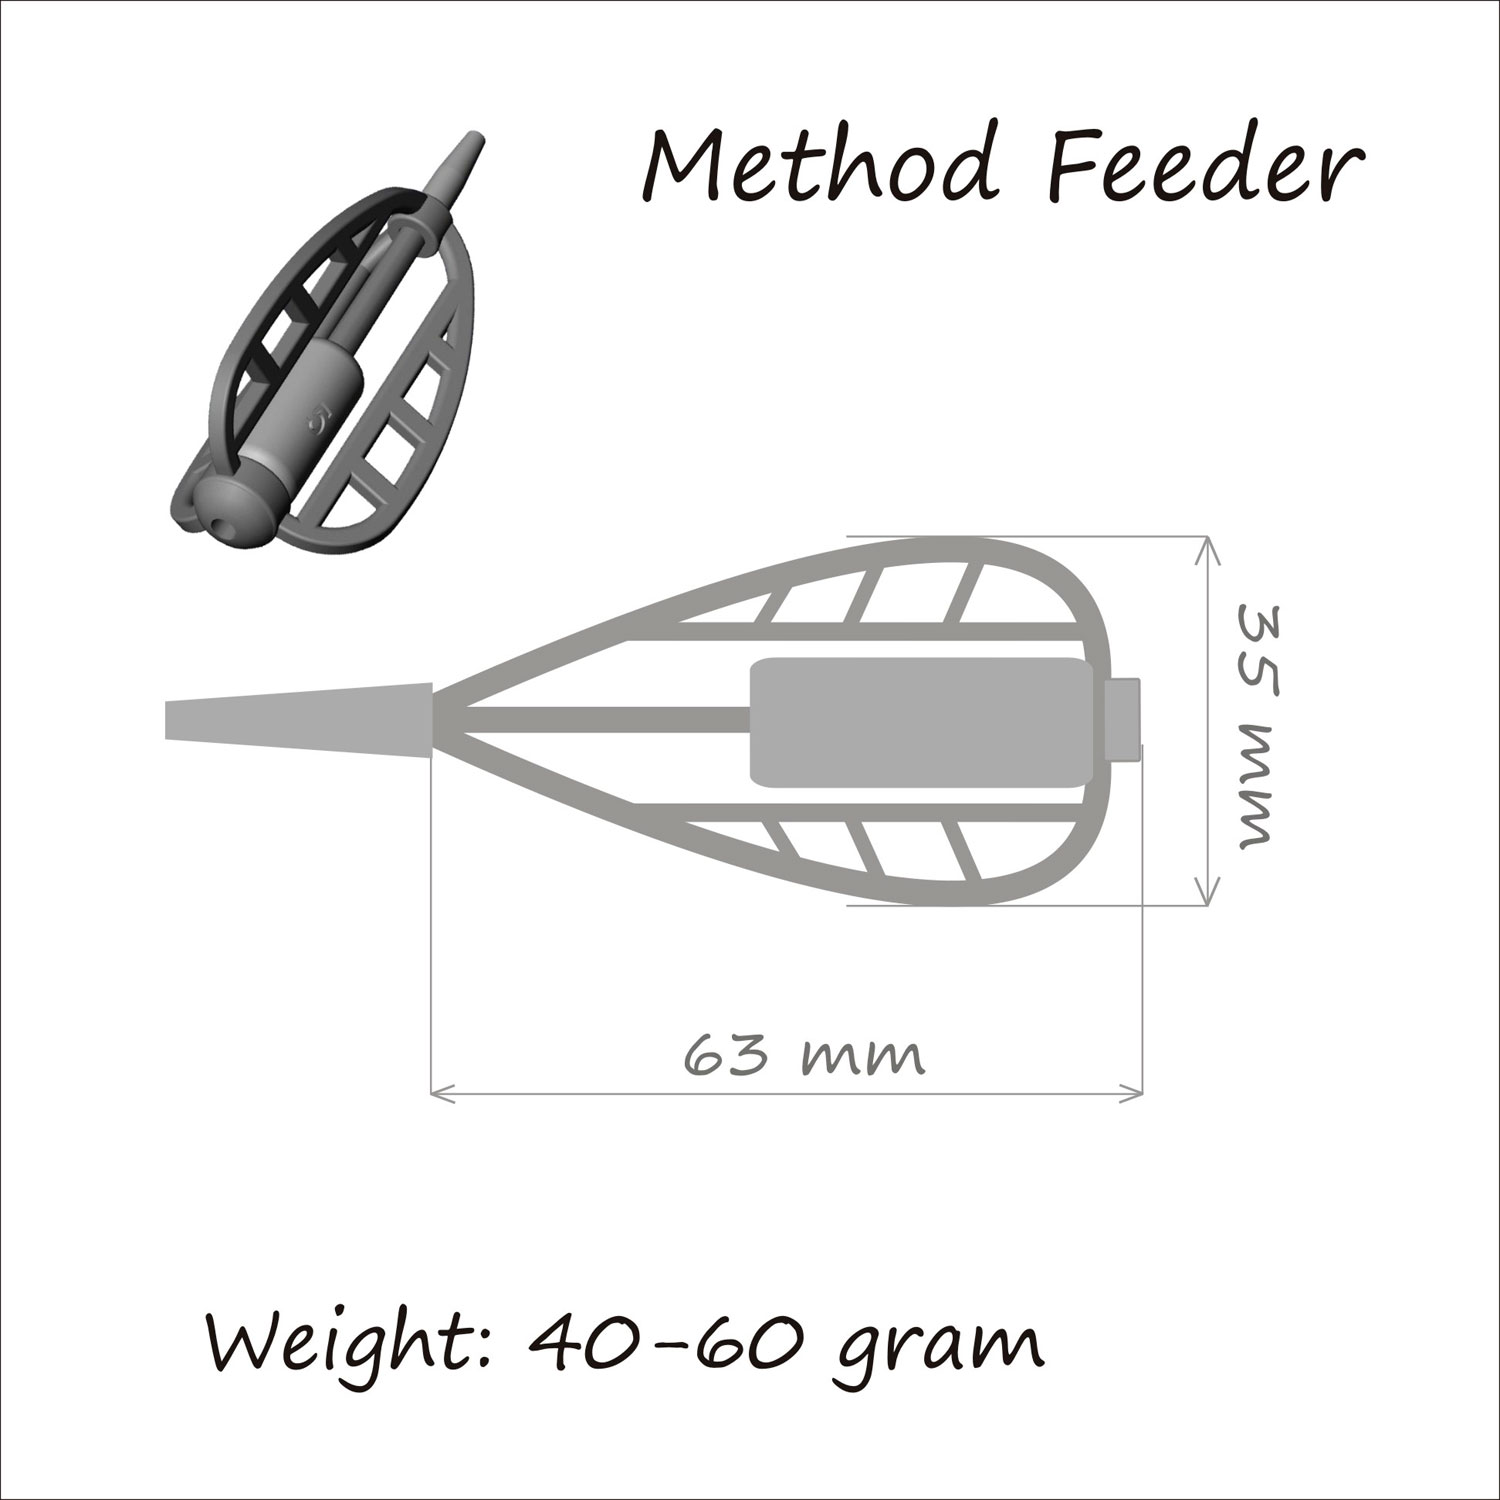 Кормушка ORANGE Method Feeder, 40 гр, в уп. 1 шт